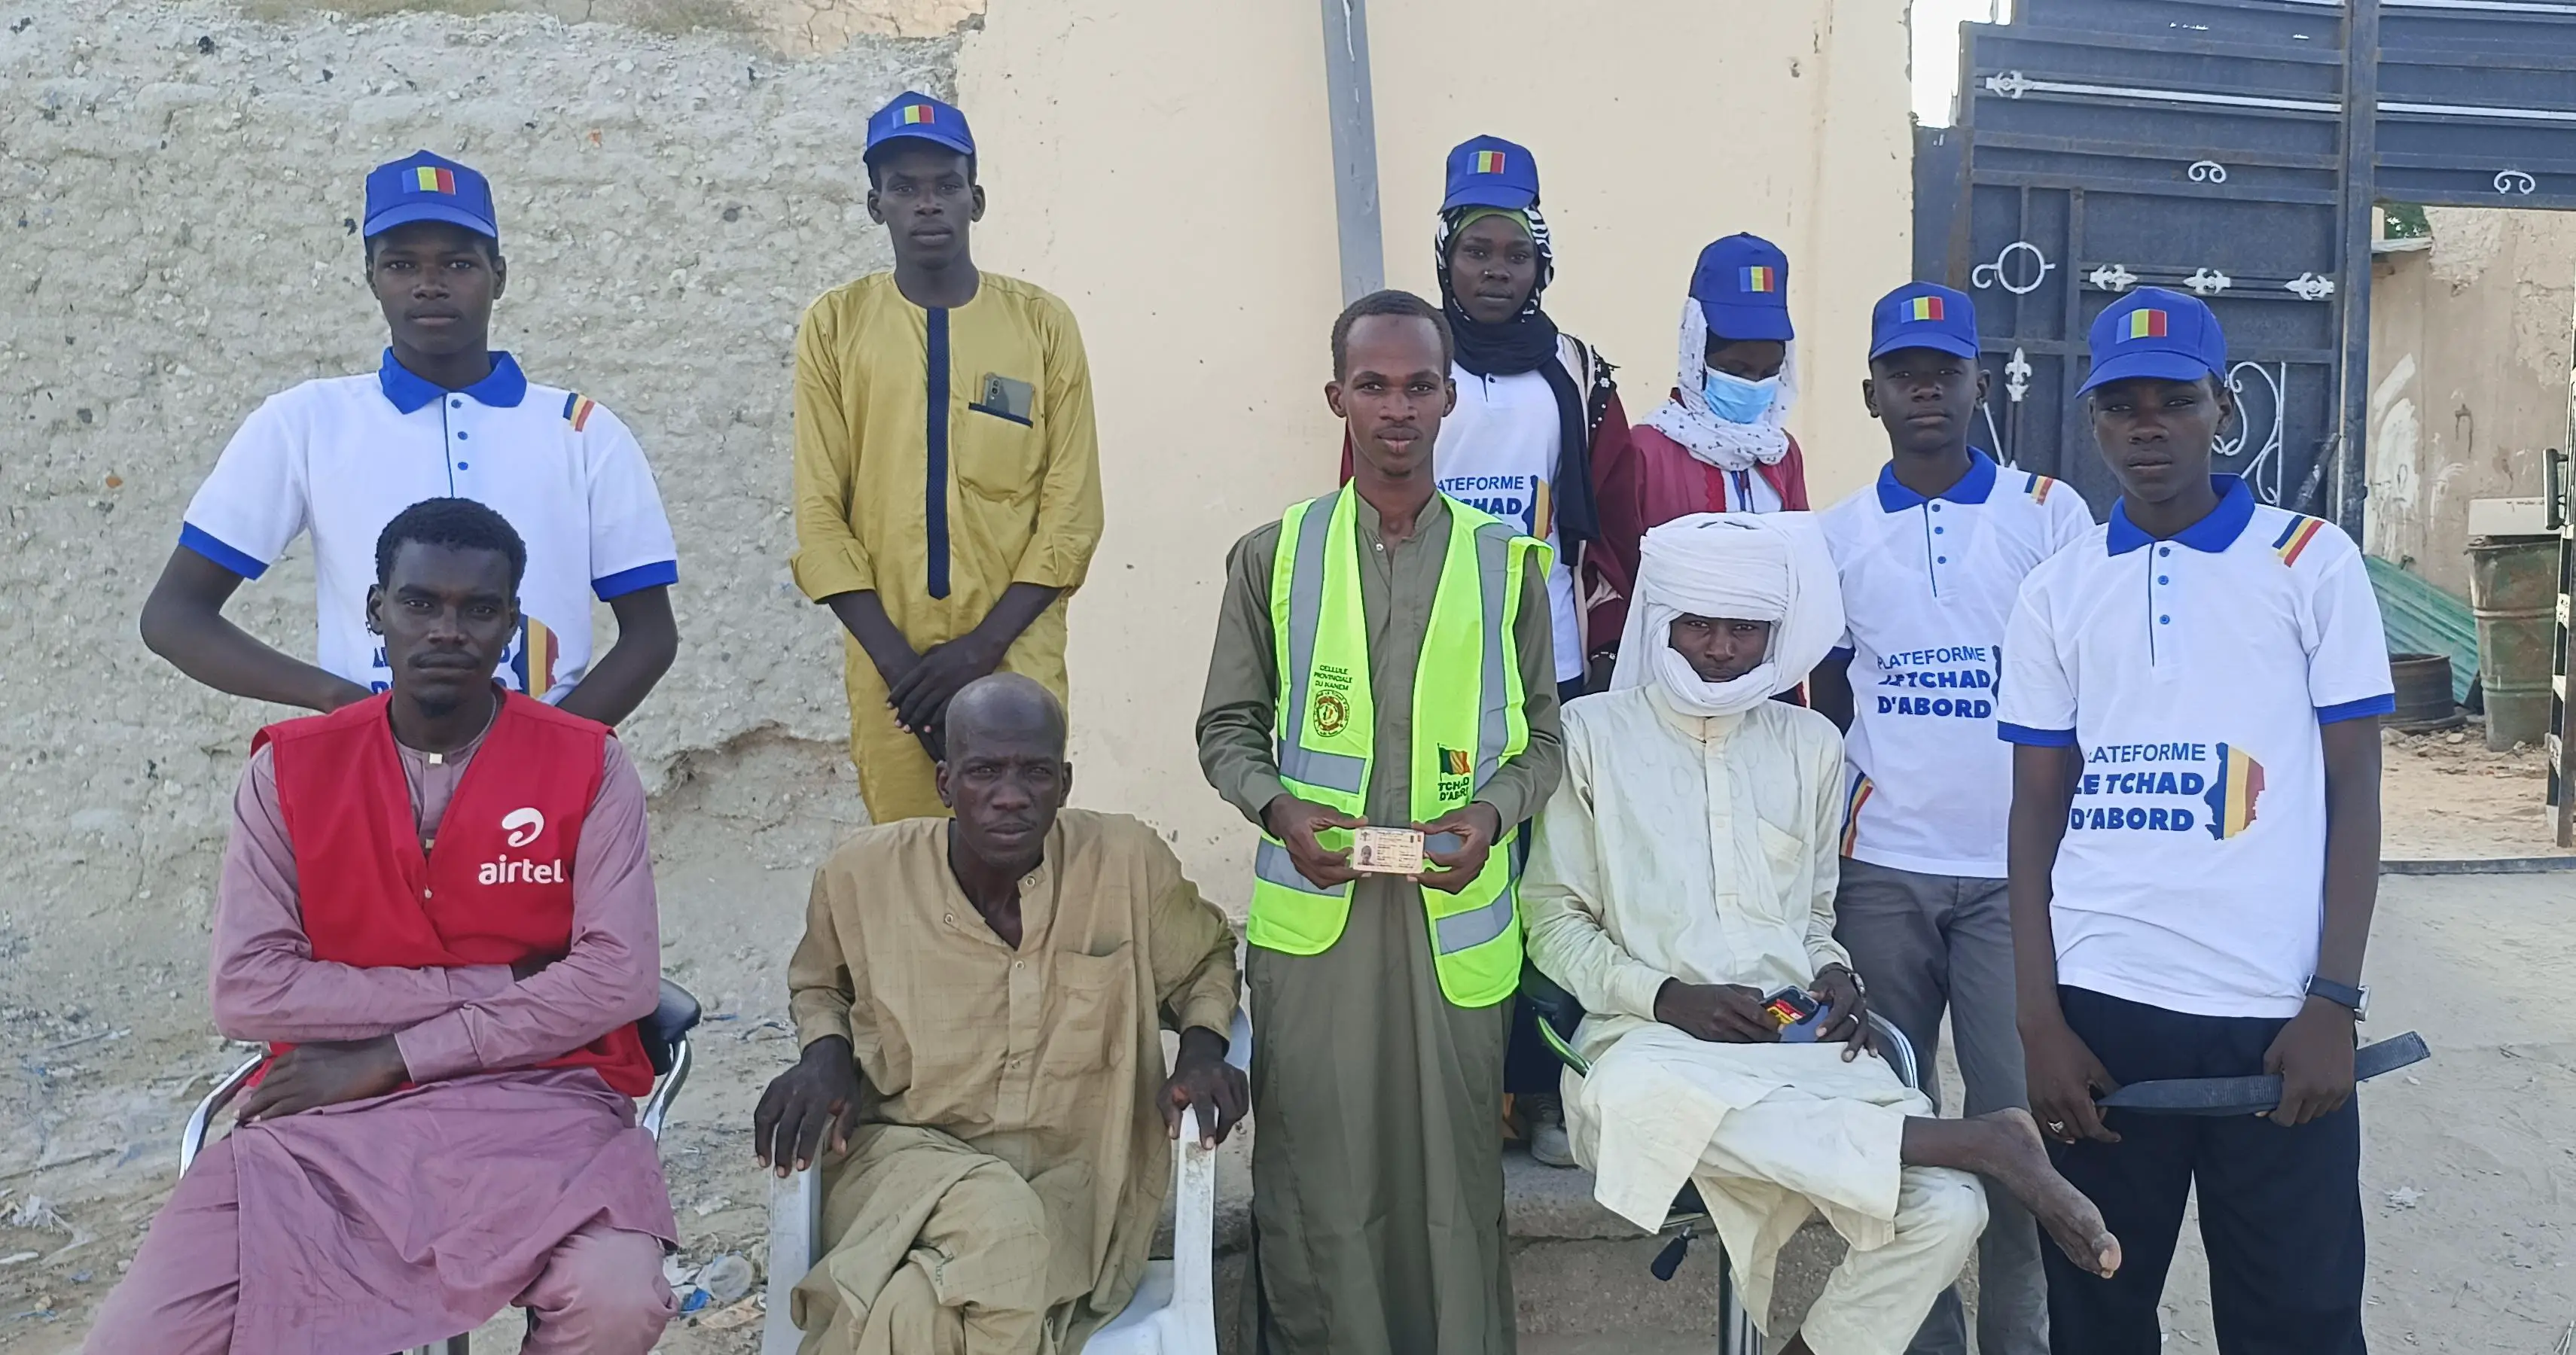 50 jeunes formés par “Le Tchad d’Abord” réussissent leur mission de sensibilisation électorale